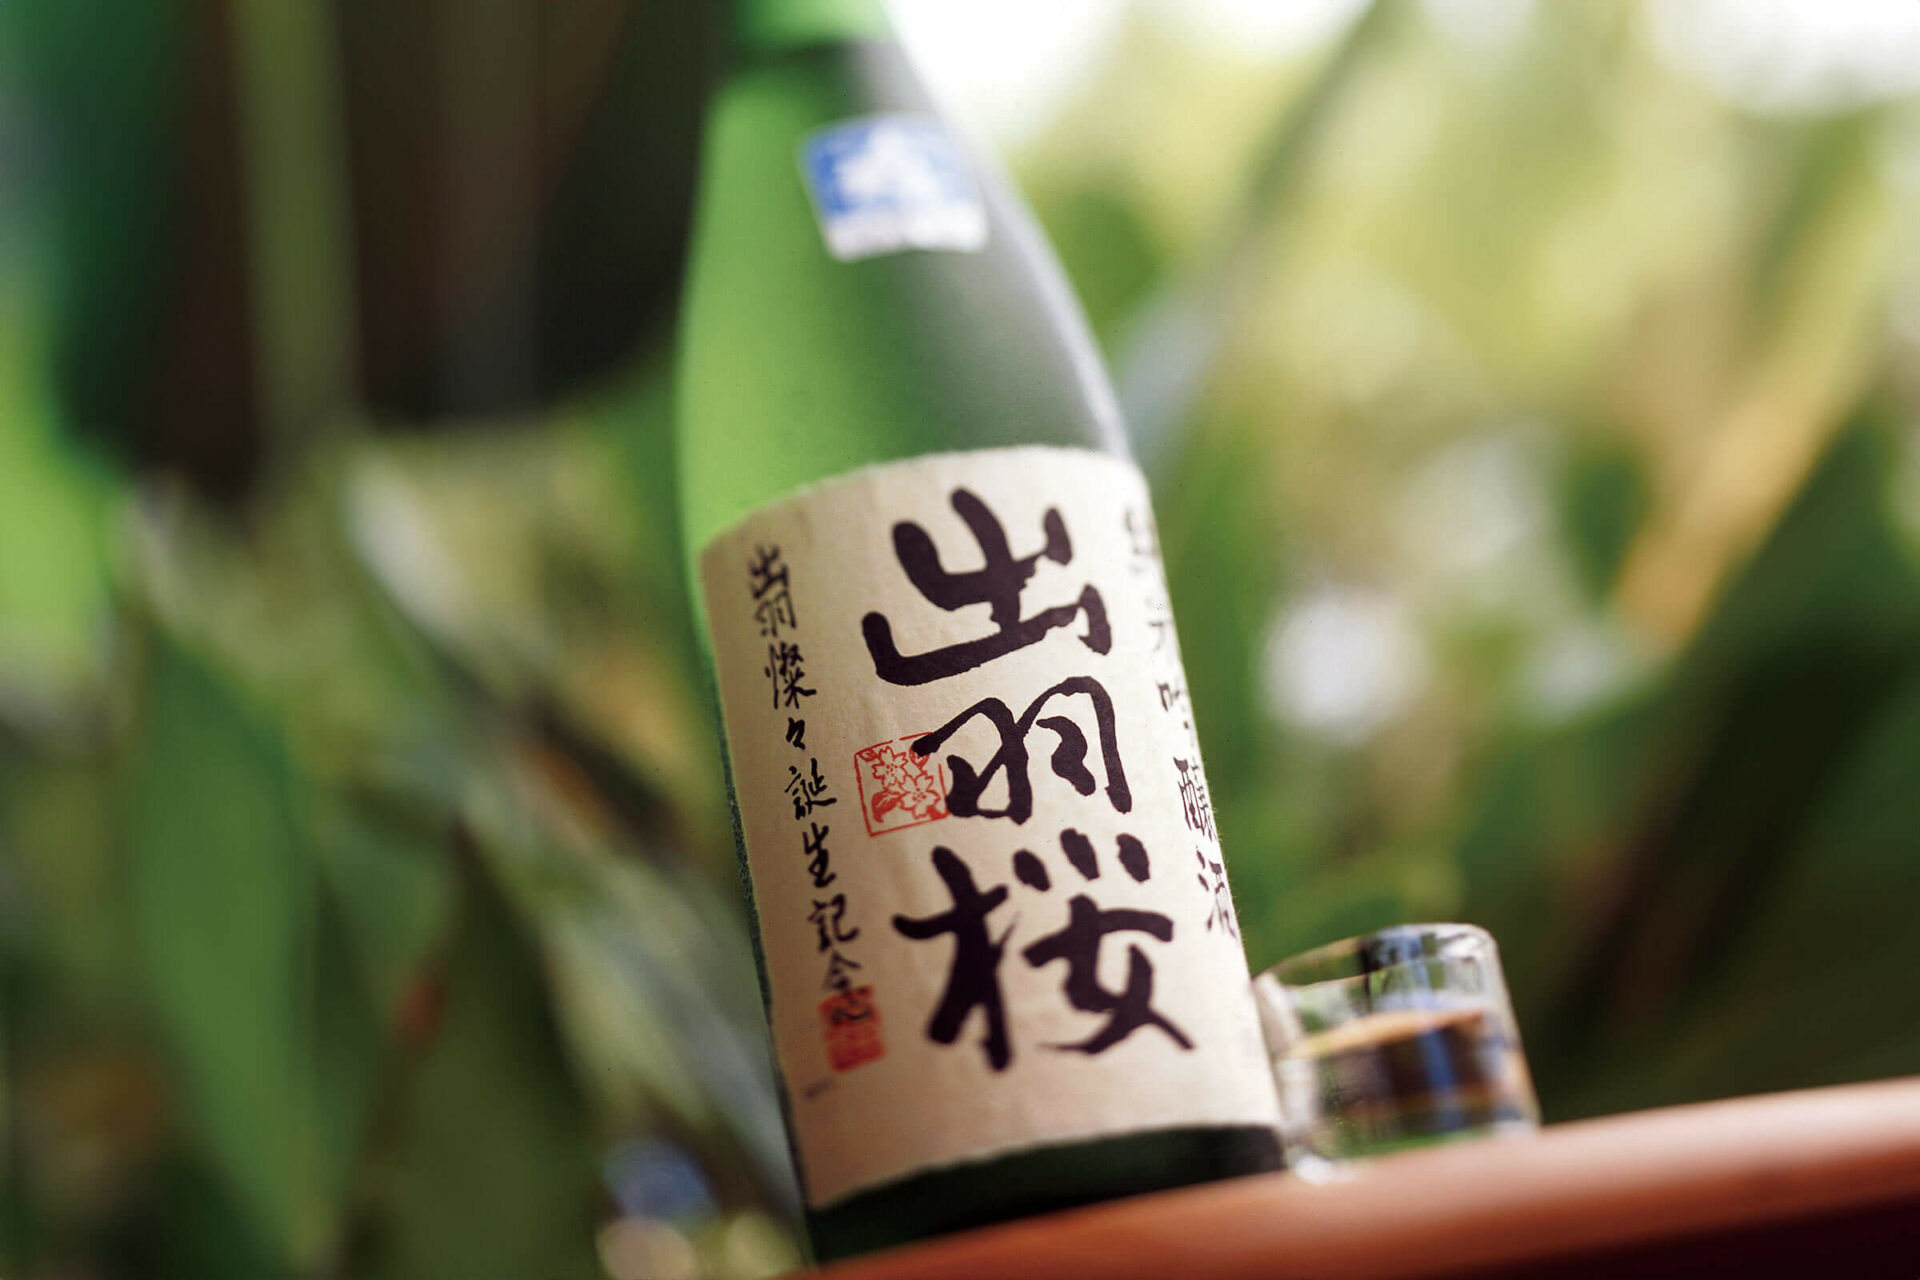 Dewazakura “Dewasansan” bottle